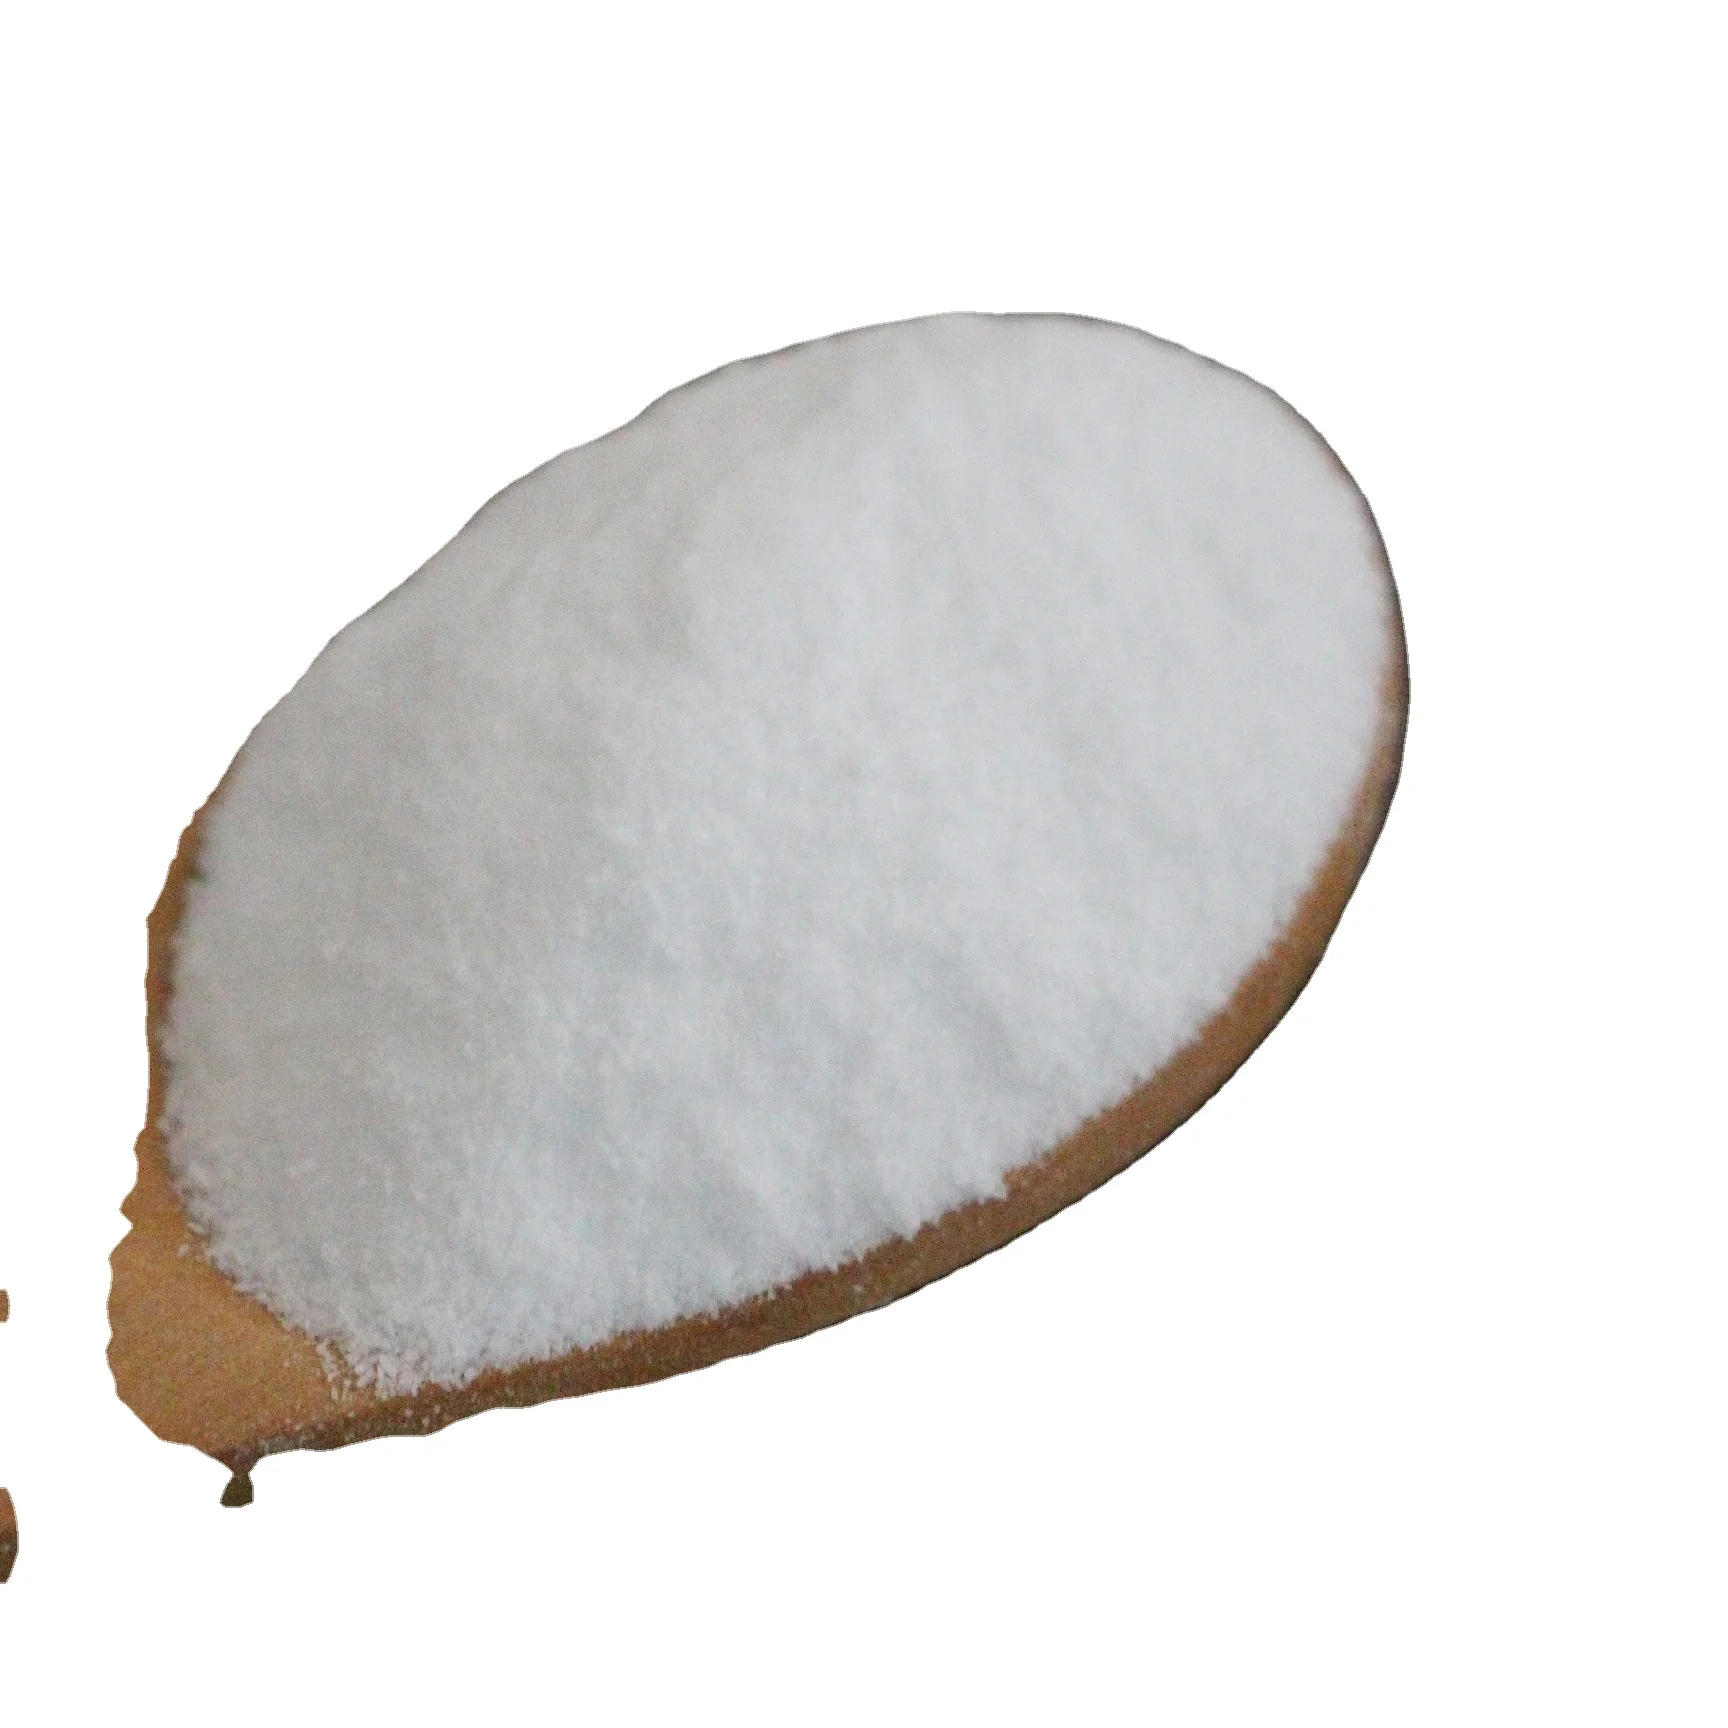 
Food Additives Agar Agar Powder CAS: 9002-18-0 